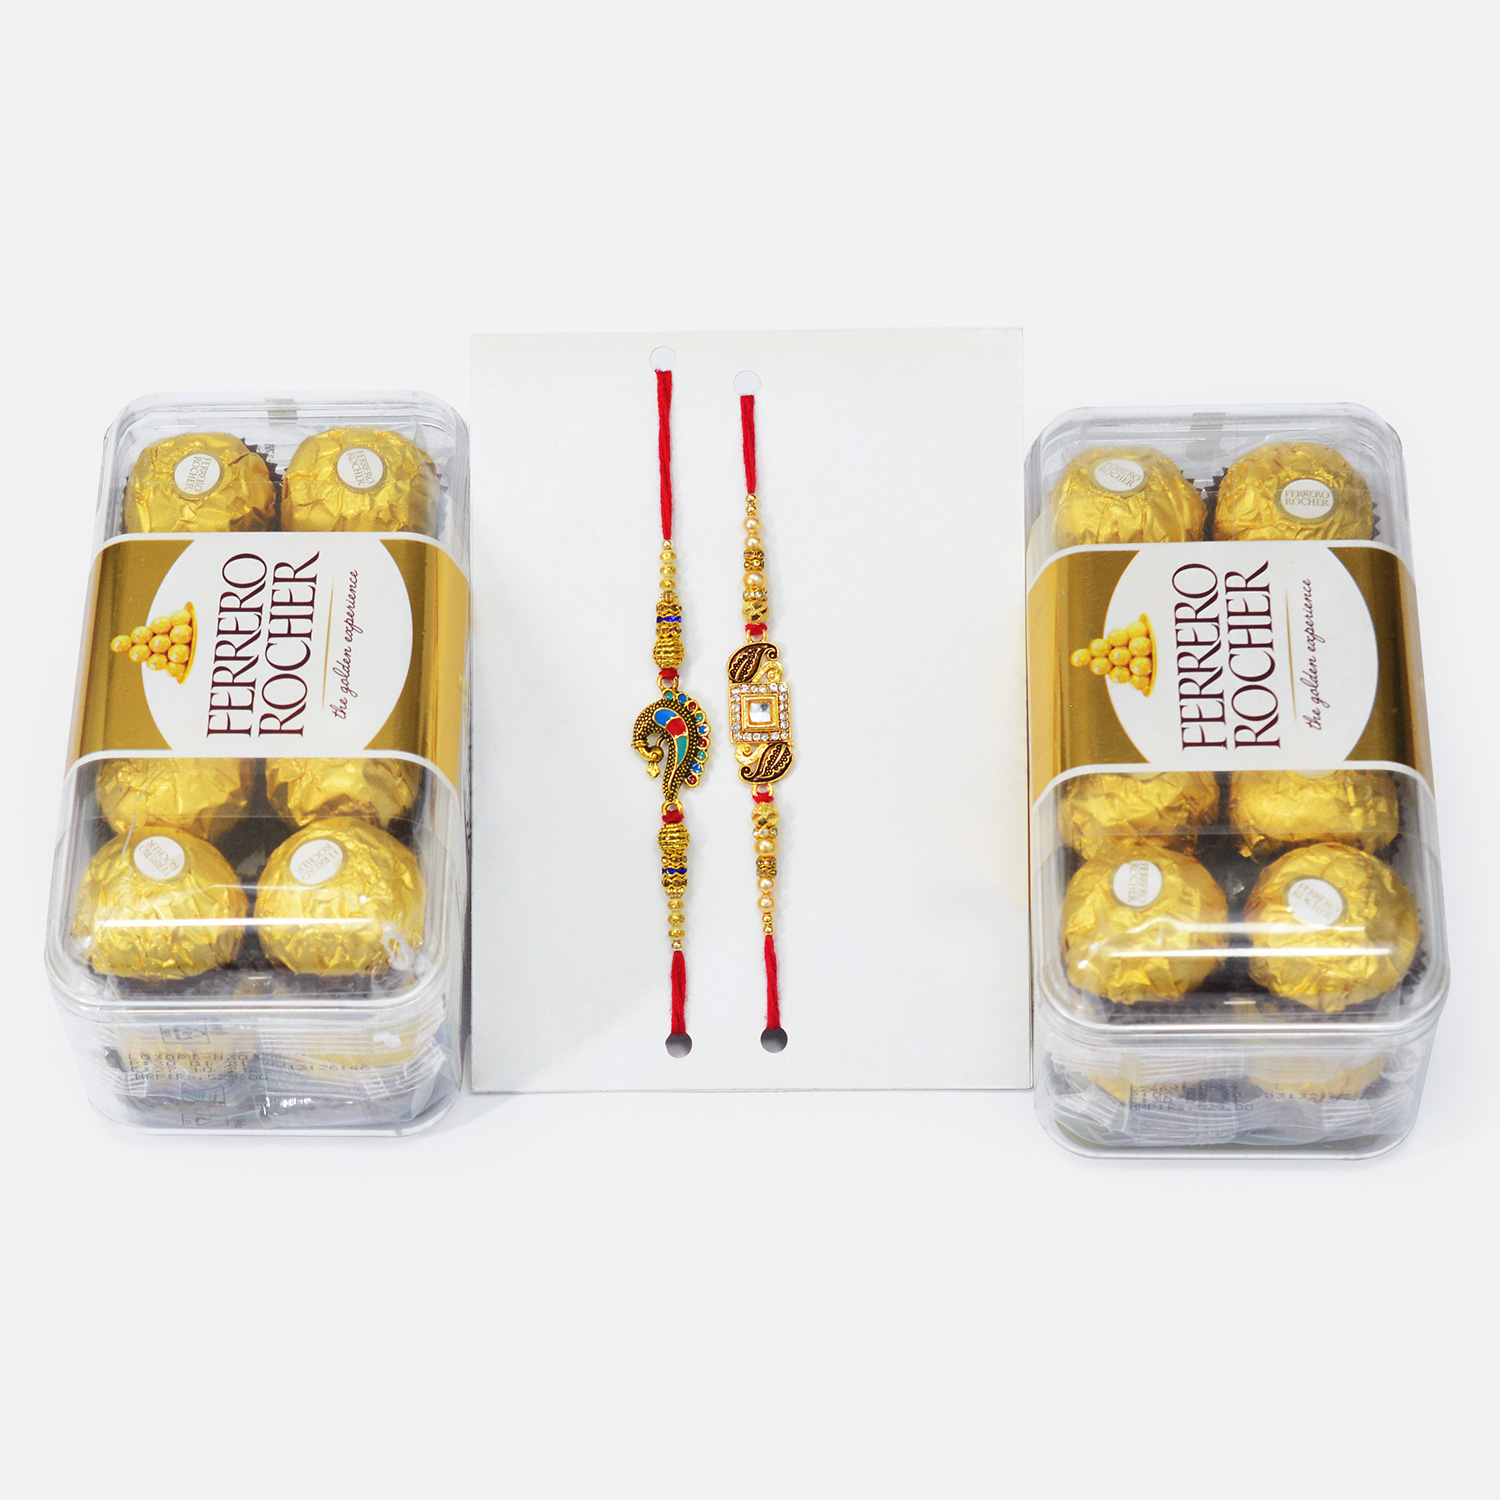 Ferrero Rocher 2 Box of Chocolates with Meenakari Work Designer Brother Rakhis